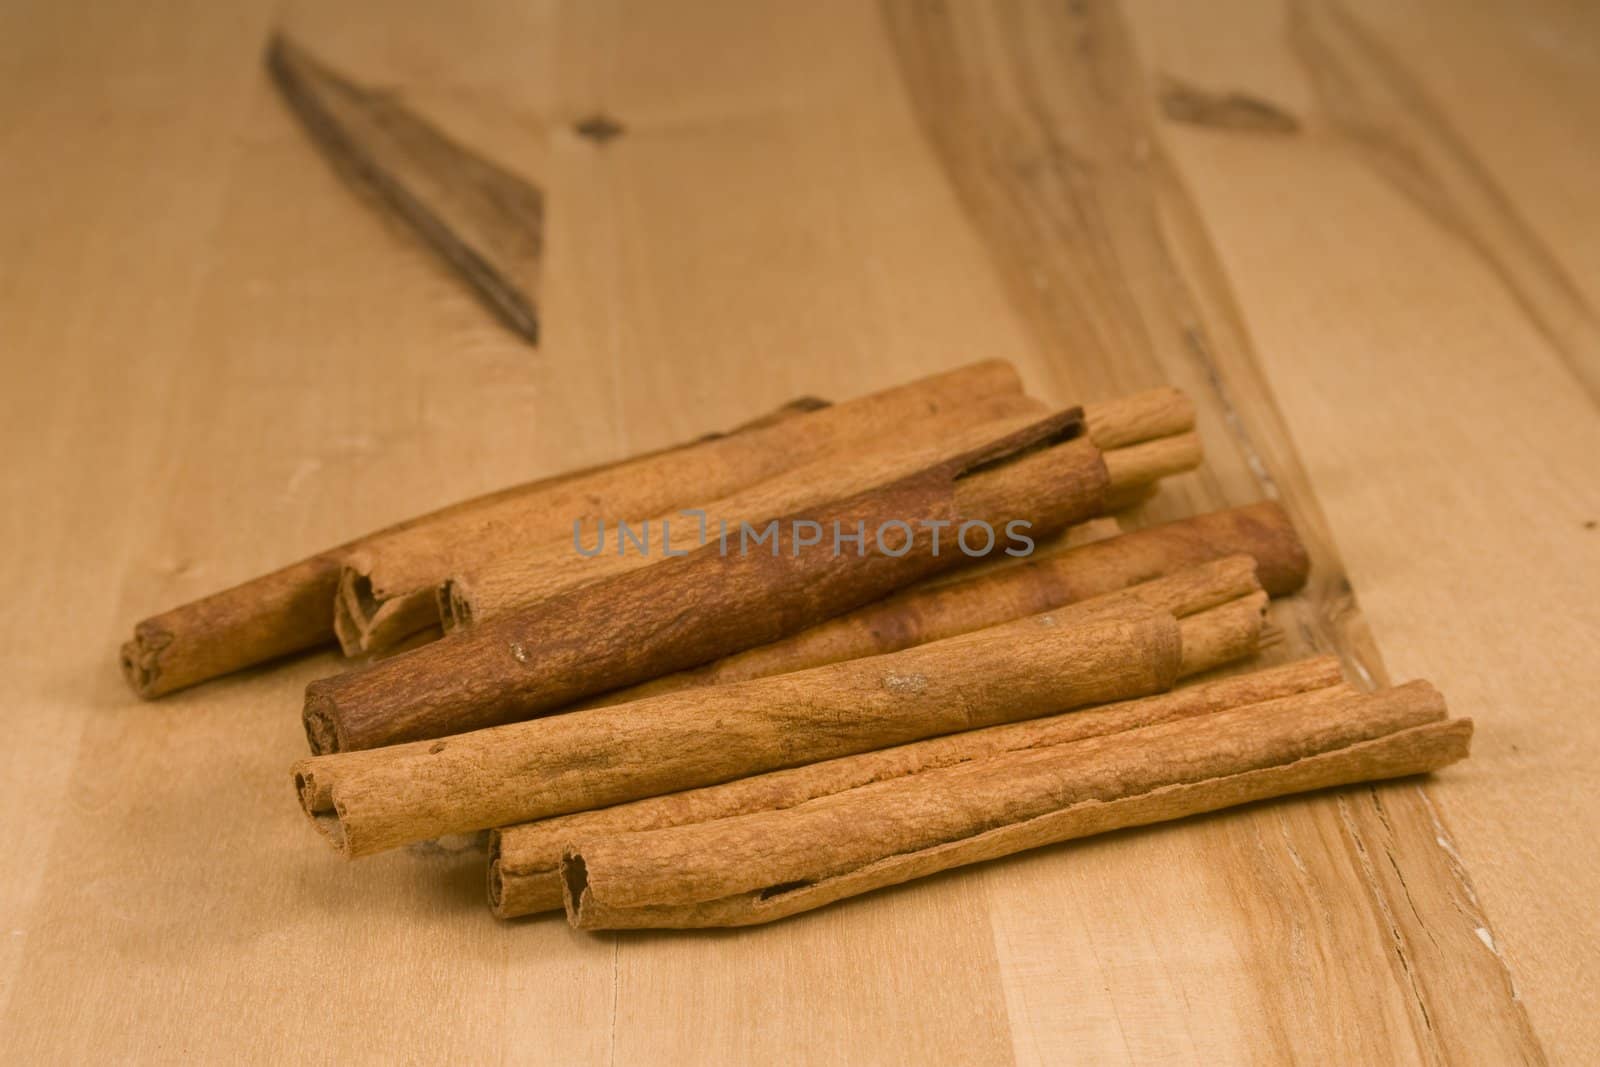 Cinnamon sticks on wood